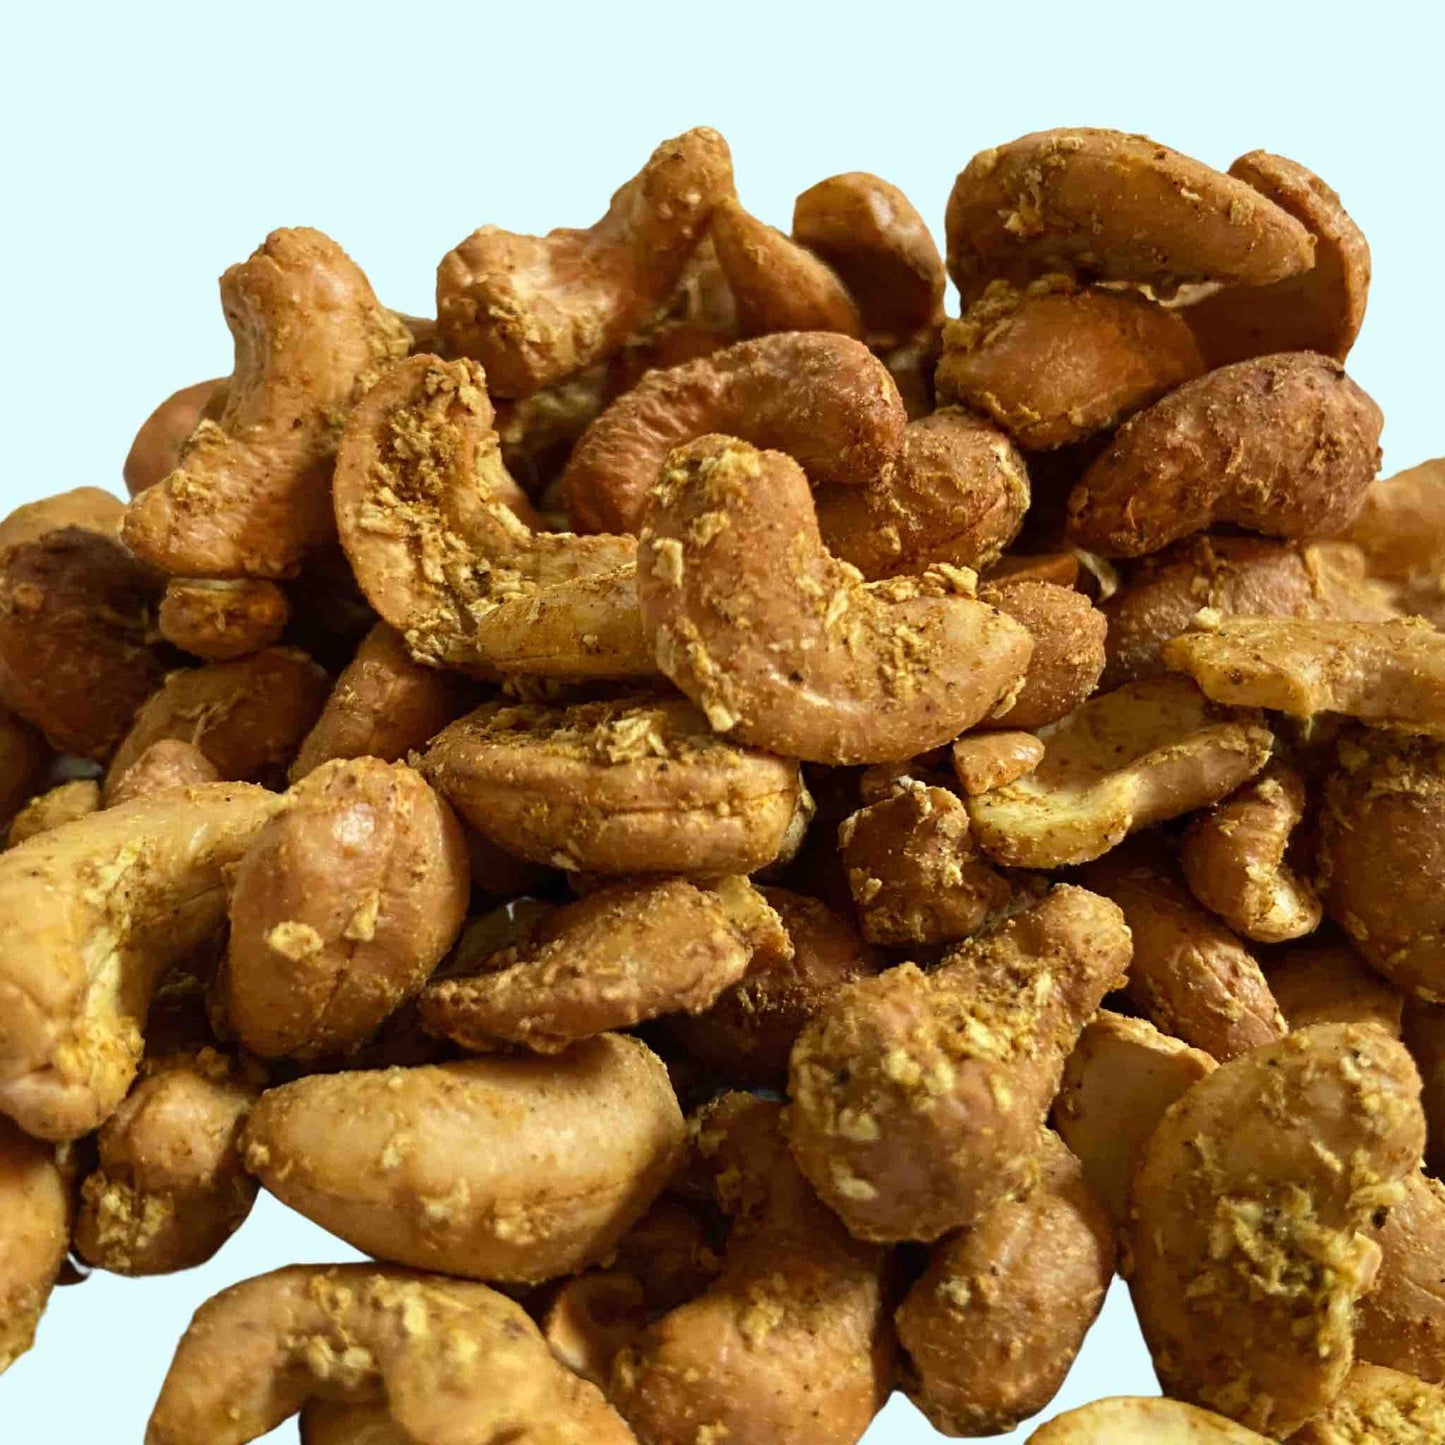 Bulk Jamaican Curry Smoked Cashews